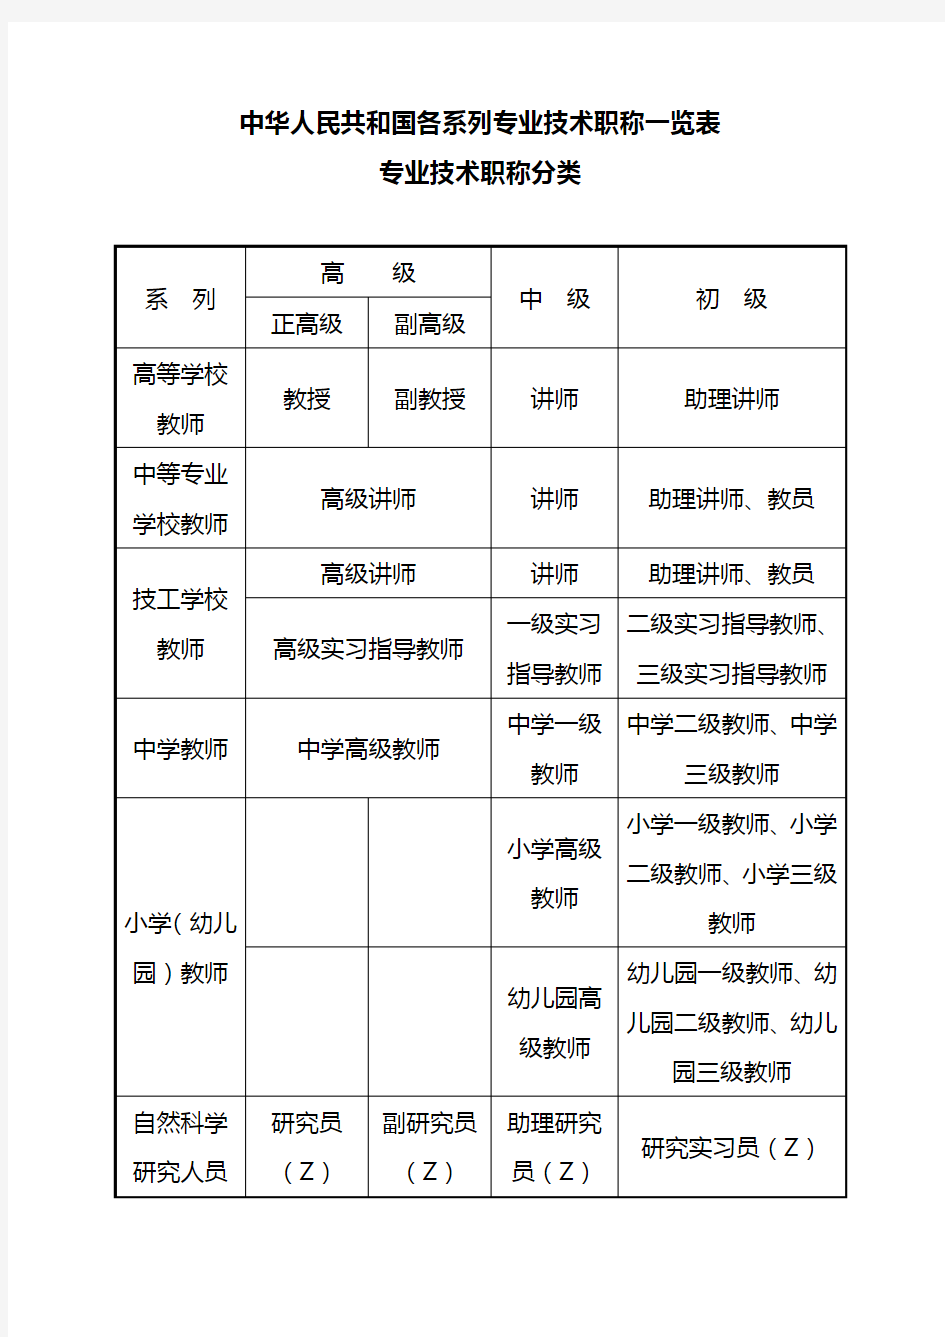 中华人民共和国各系列专业技术职称一览表